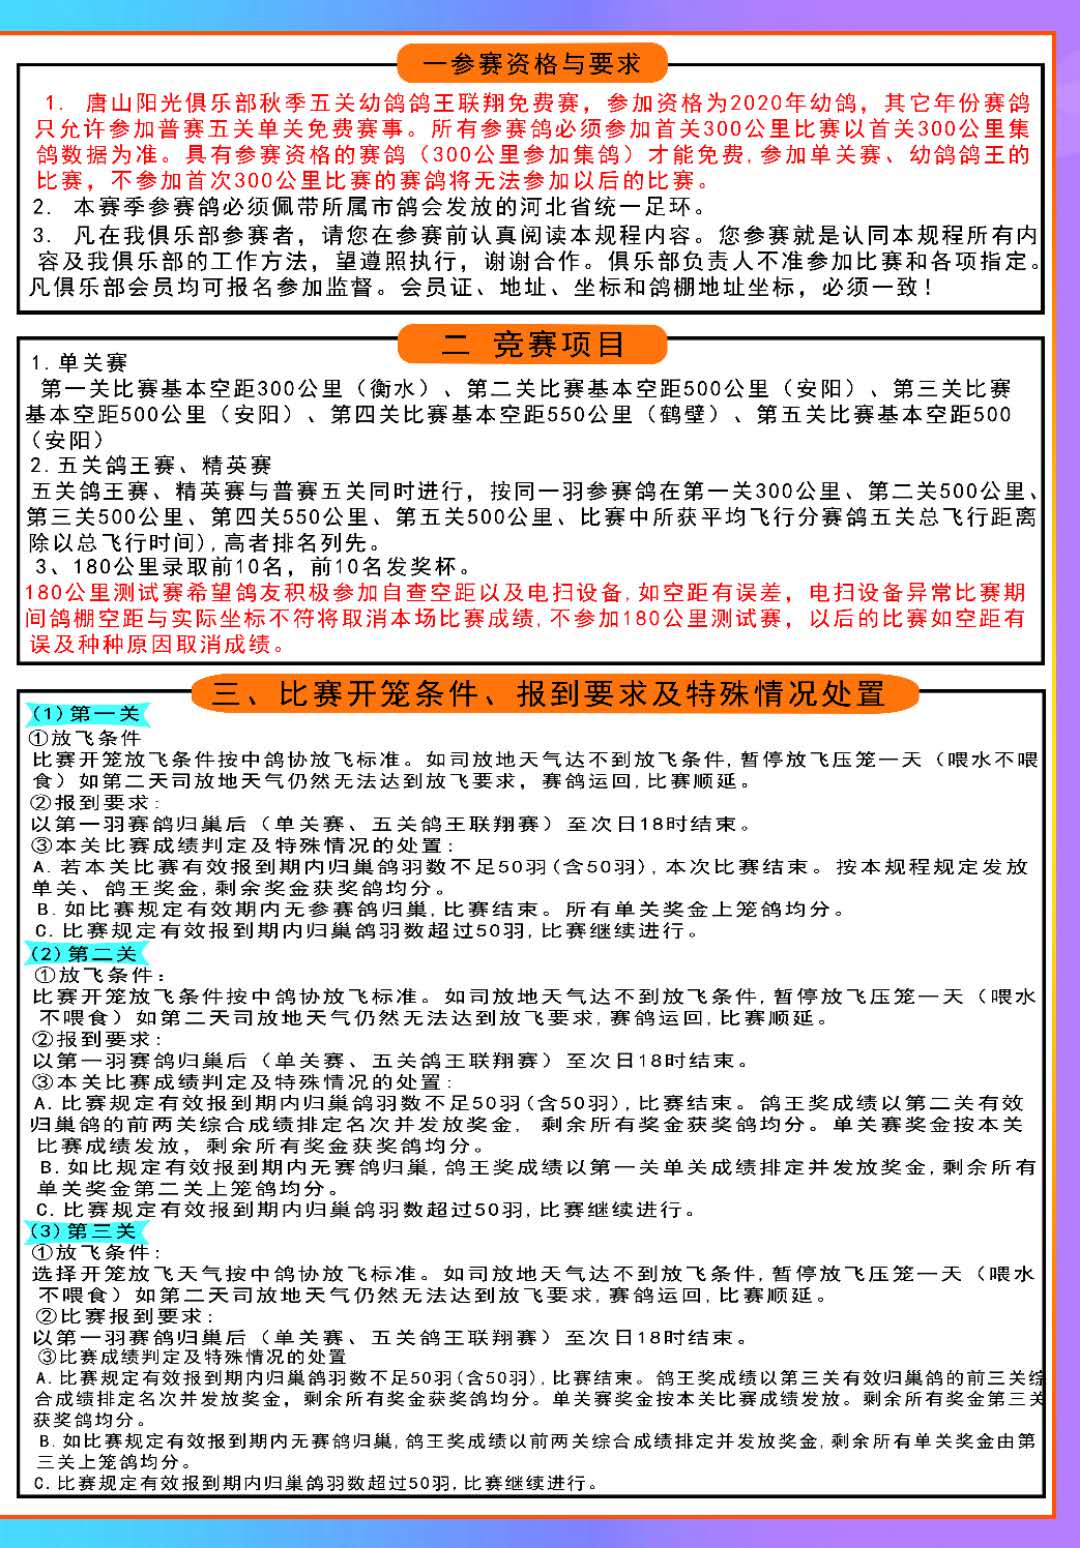 唐山阳光赛鸽俱乐部2020年秋季竞翔规程（安捷）